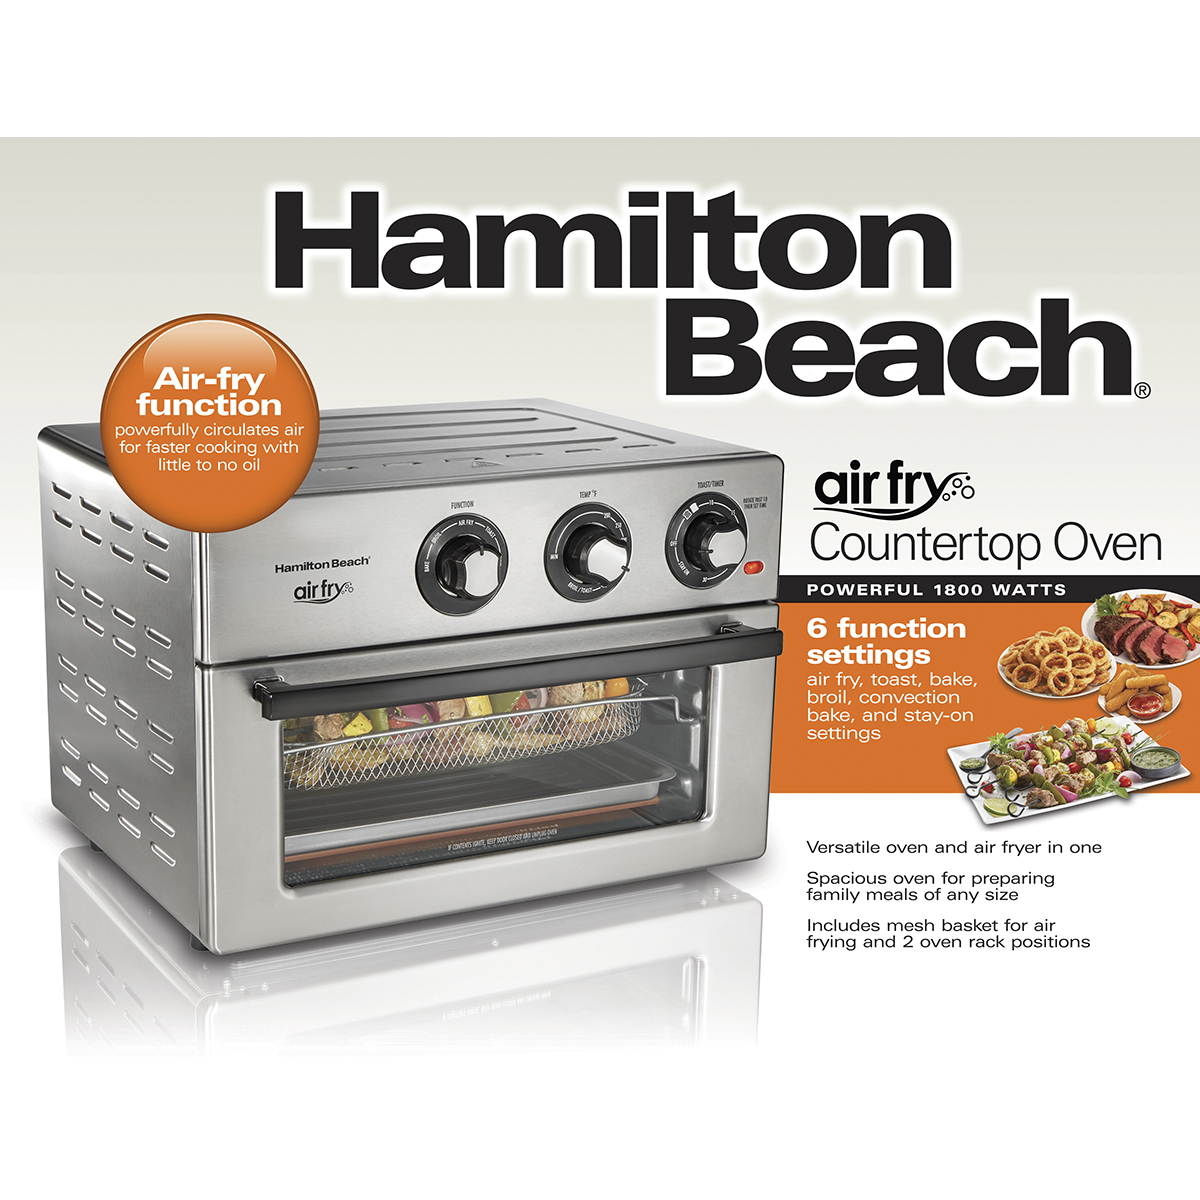 Hamilton Beach Air Fry Countertop Oven - 31225